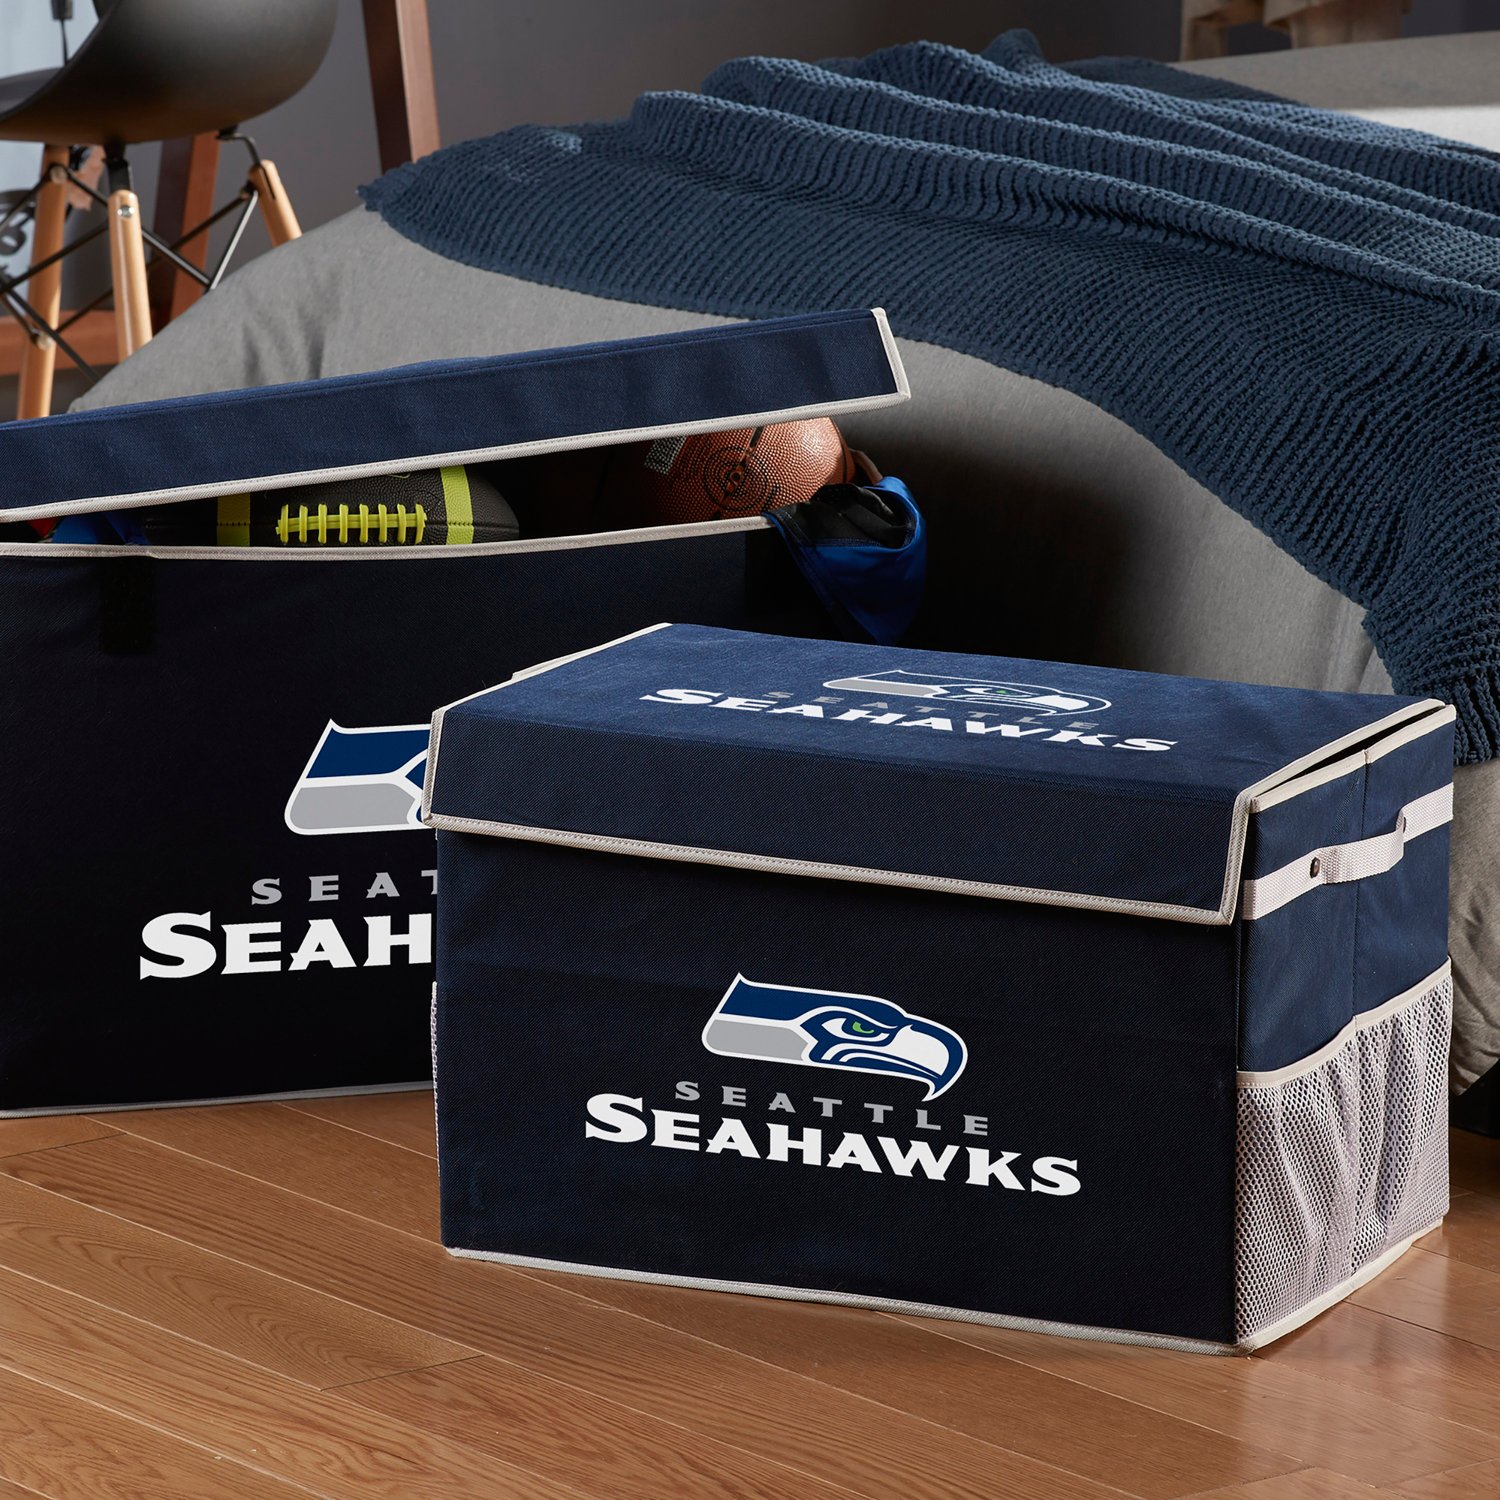 Franklin Seattle Seahawks Collapsible Storage Footlocker Bin Academy